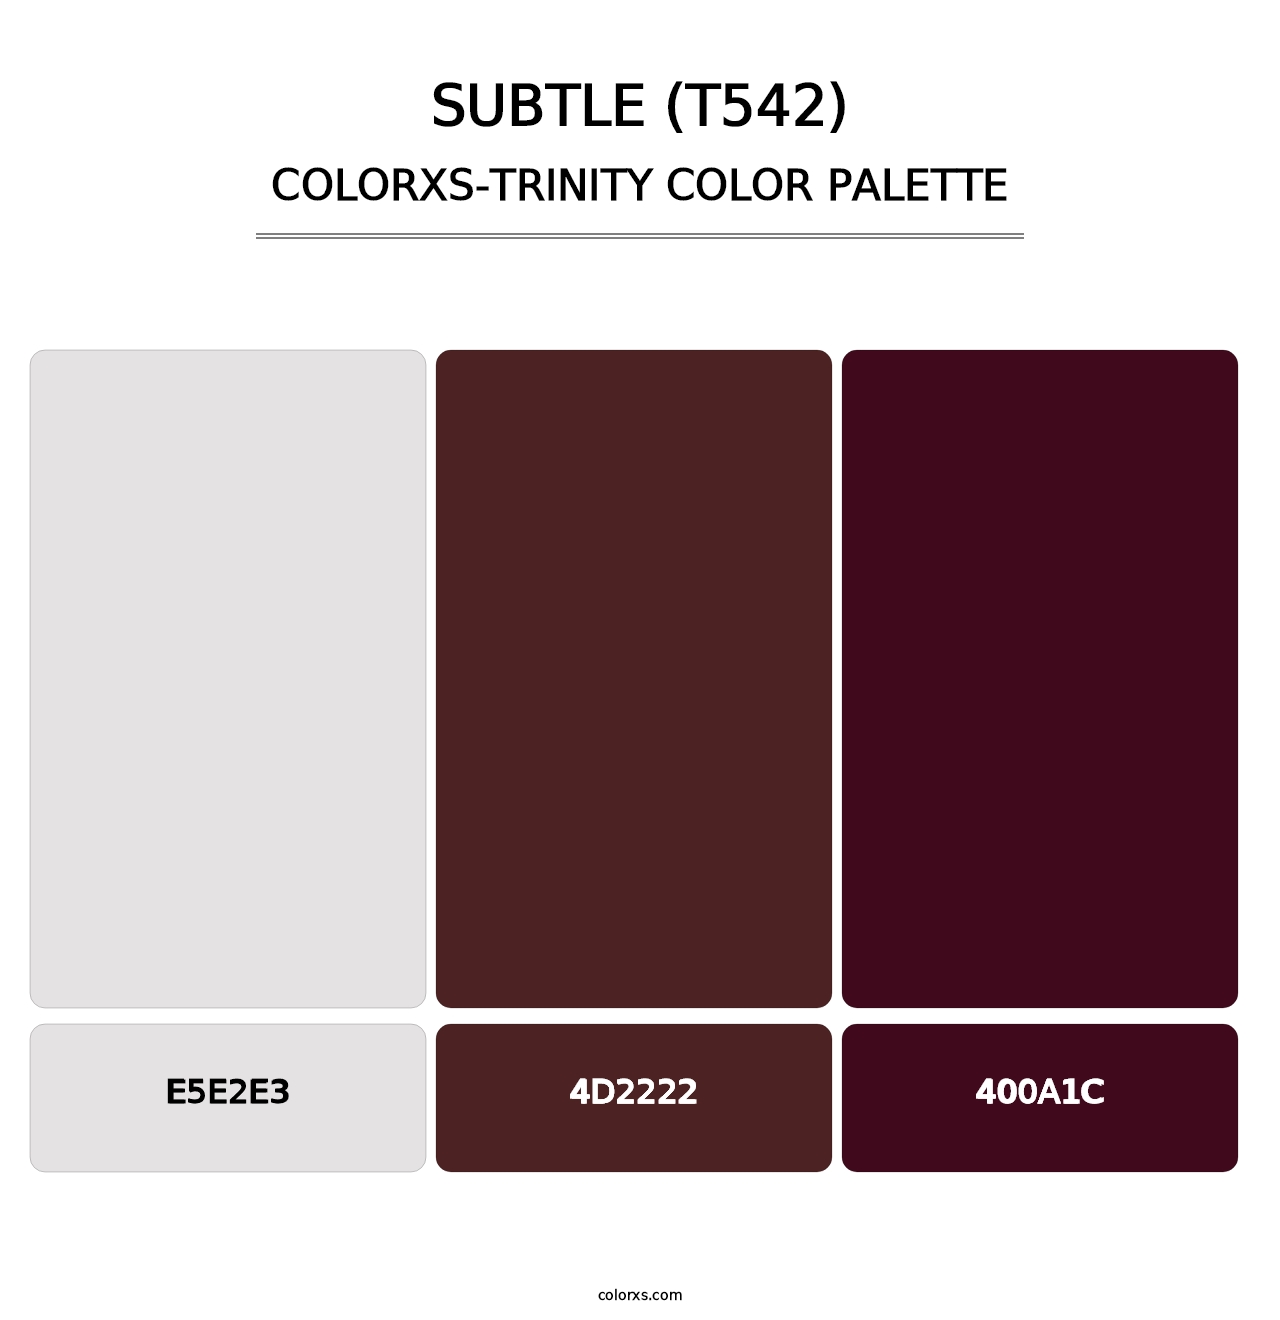 Subtle (T542) - Colorxs Trinity Palette